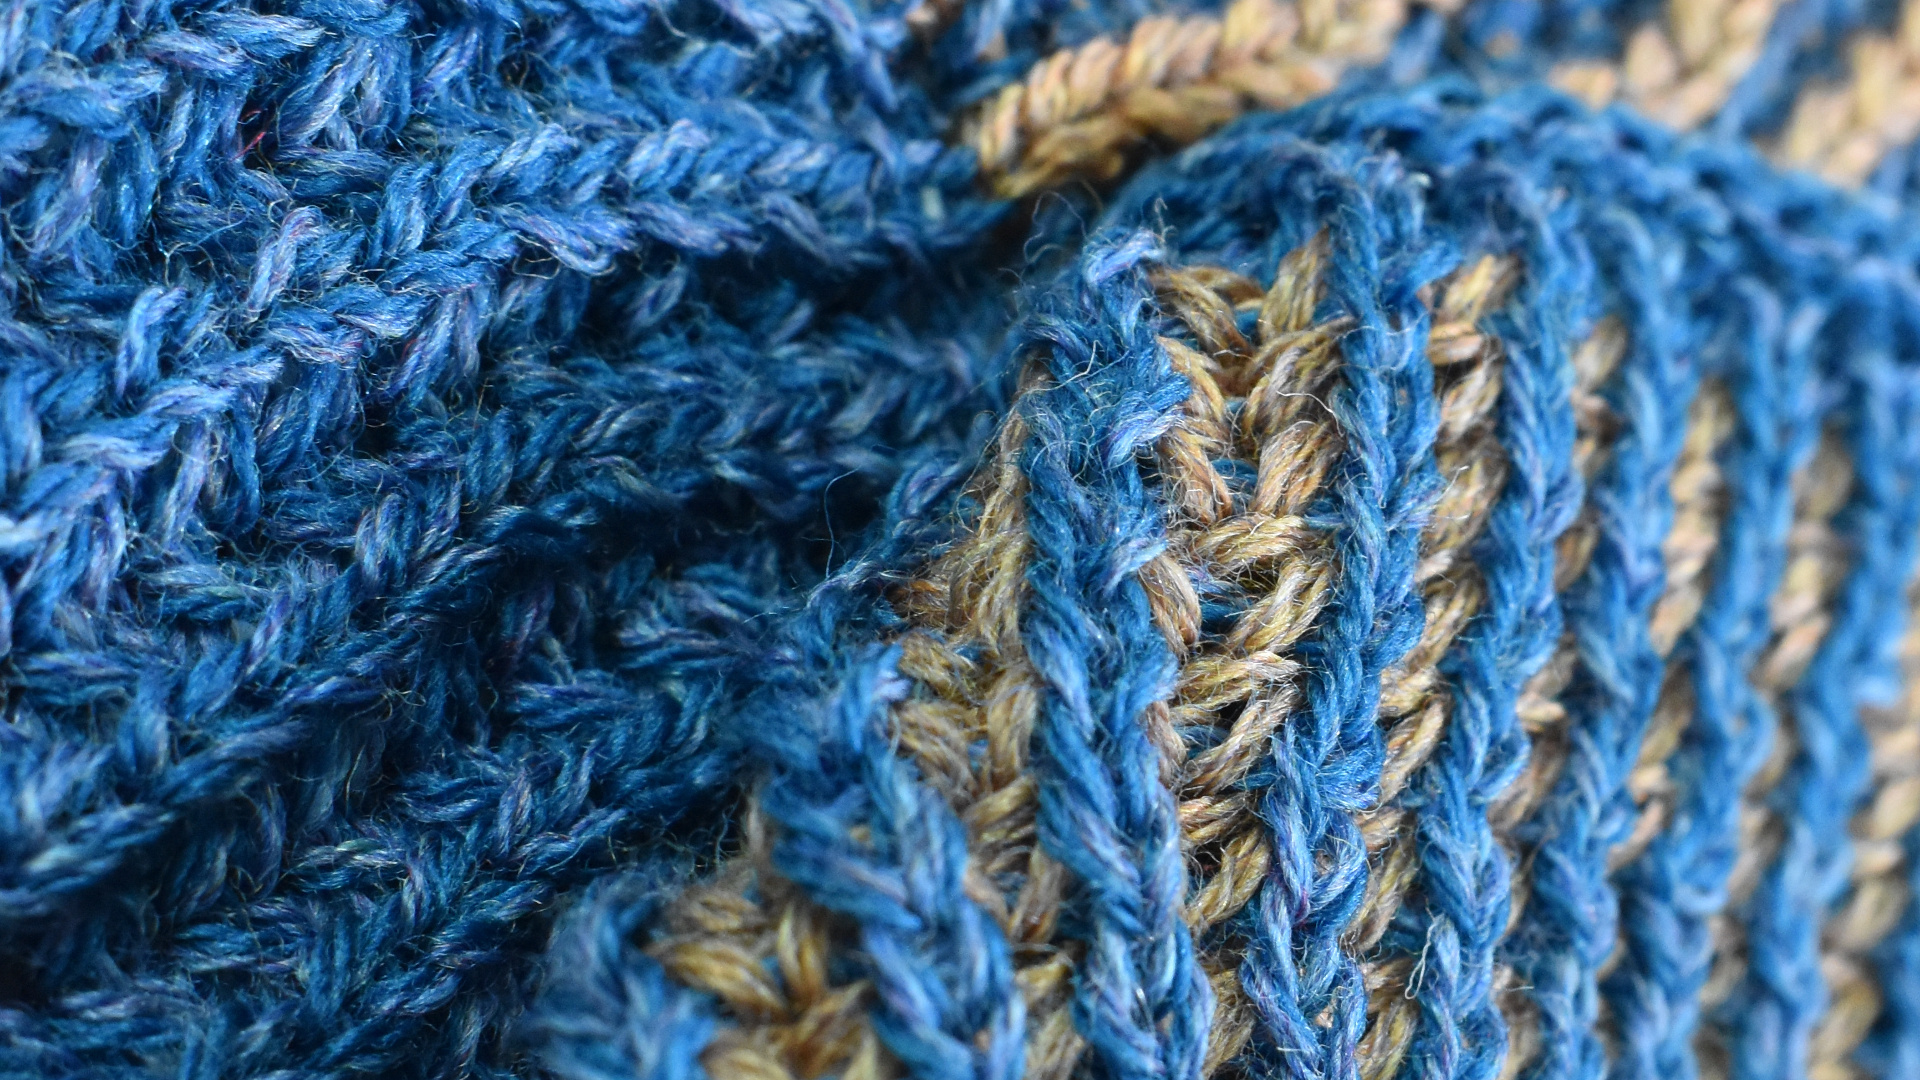 Wool sweater knit fabric